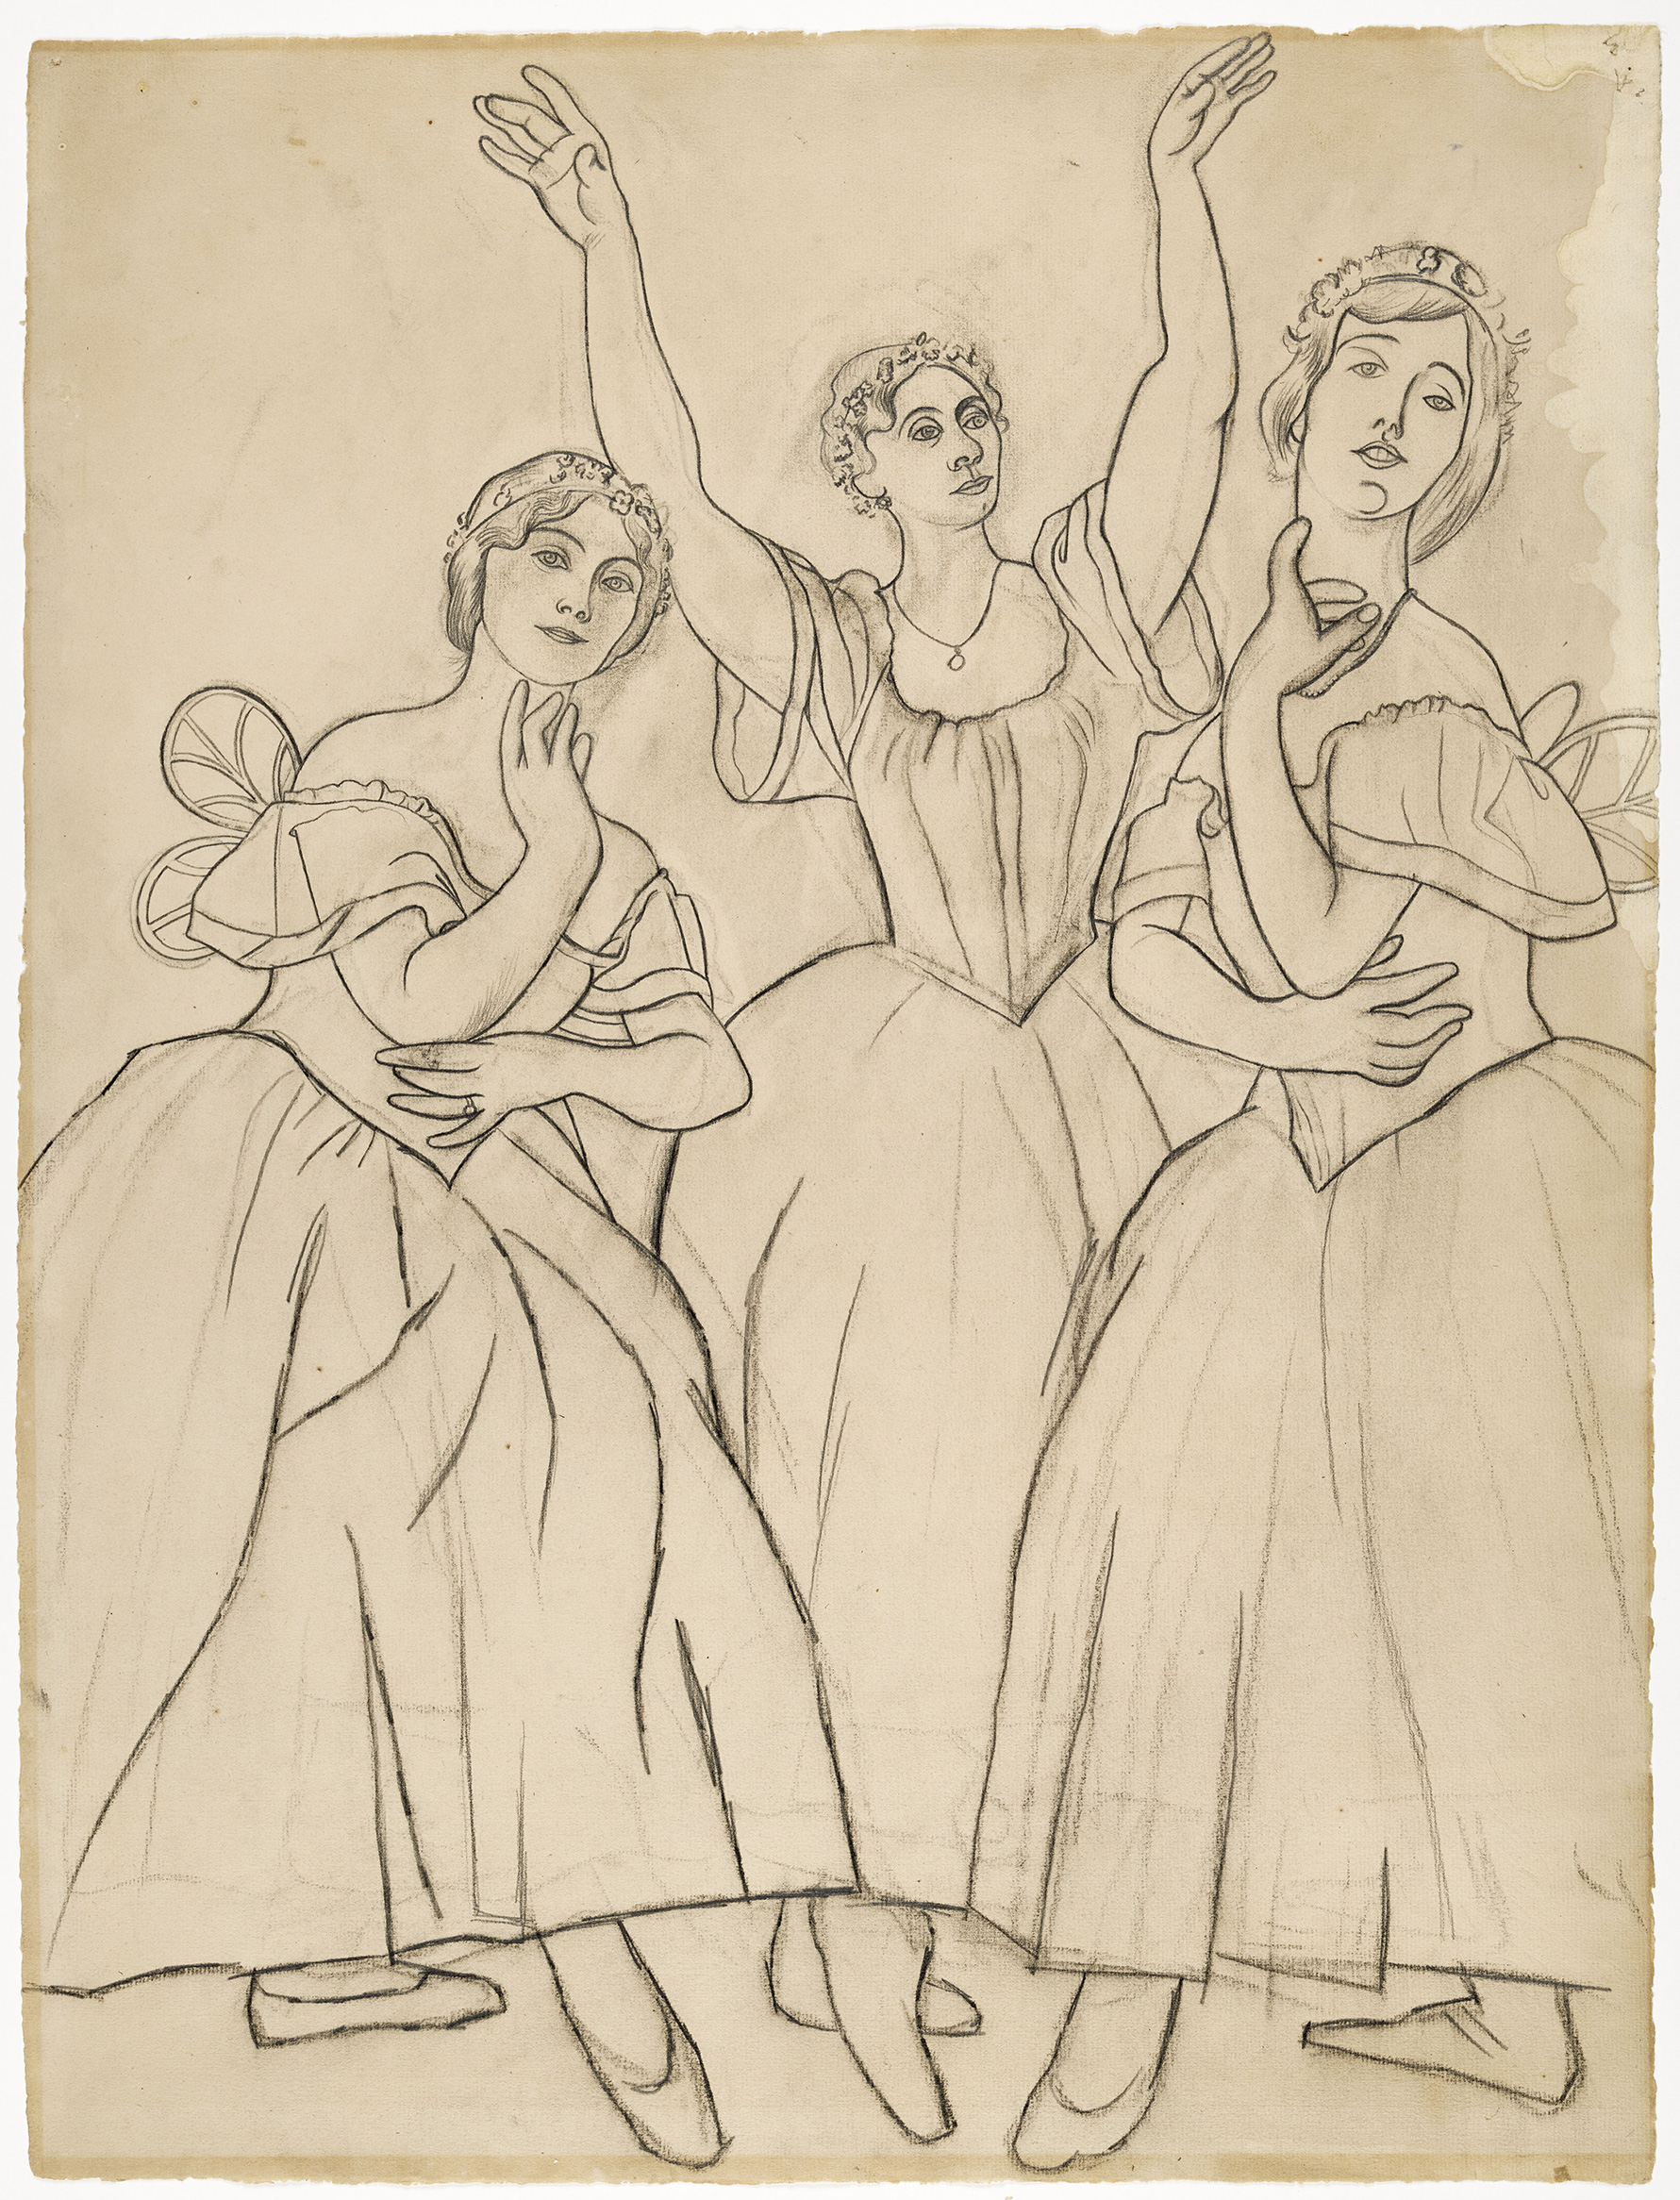 Picasso - Trois danseuses : Olga Kokhlova, Lydia Lopoukhova et Loubov Chernicheva (d'après une photographie) - MP834 - 16-560478